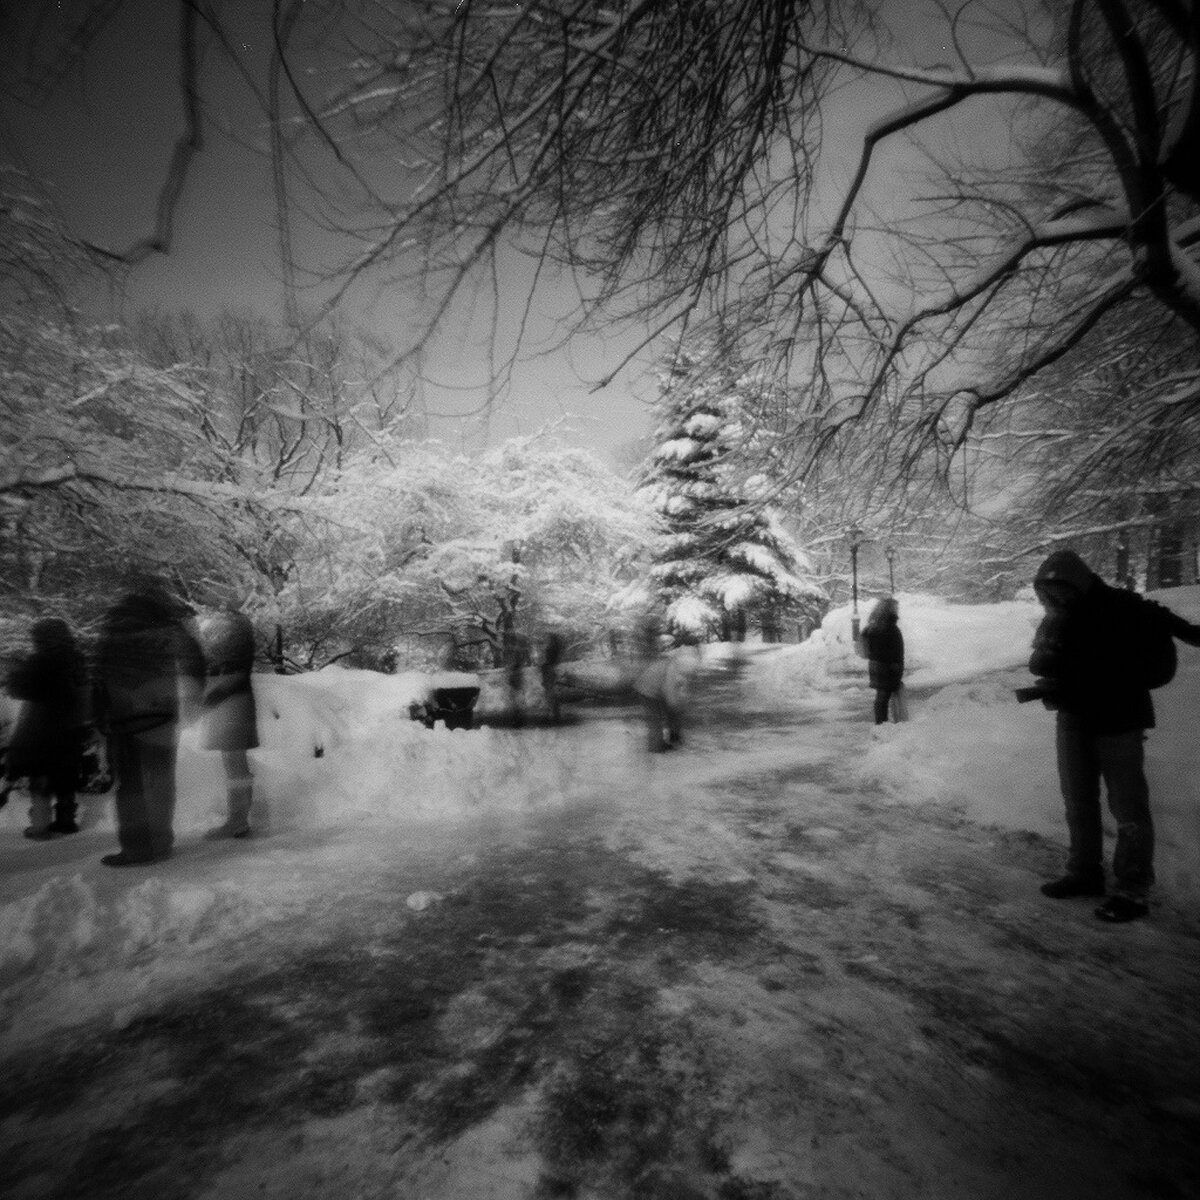   Central Park Snow 2 , 2014 